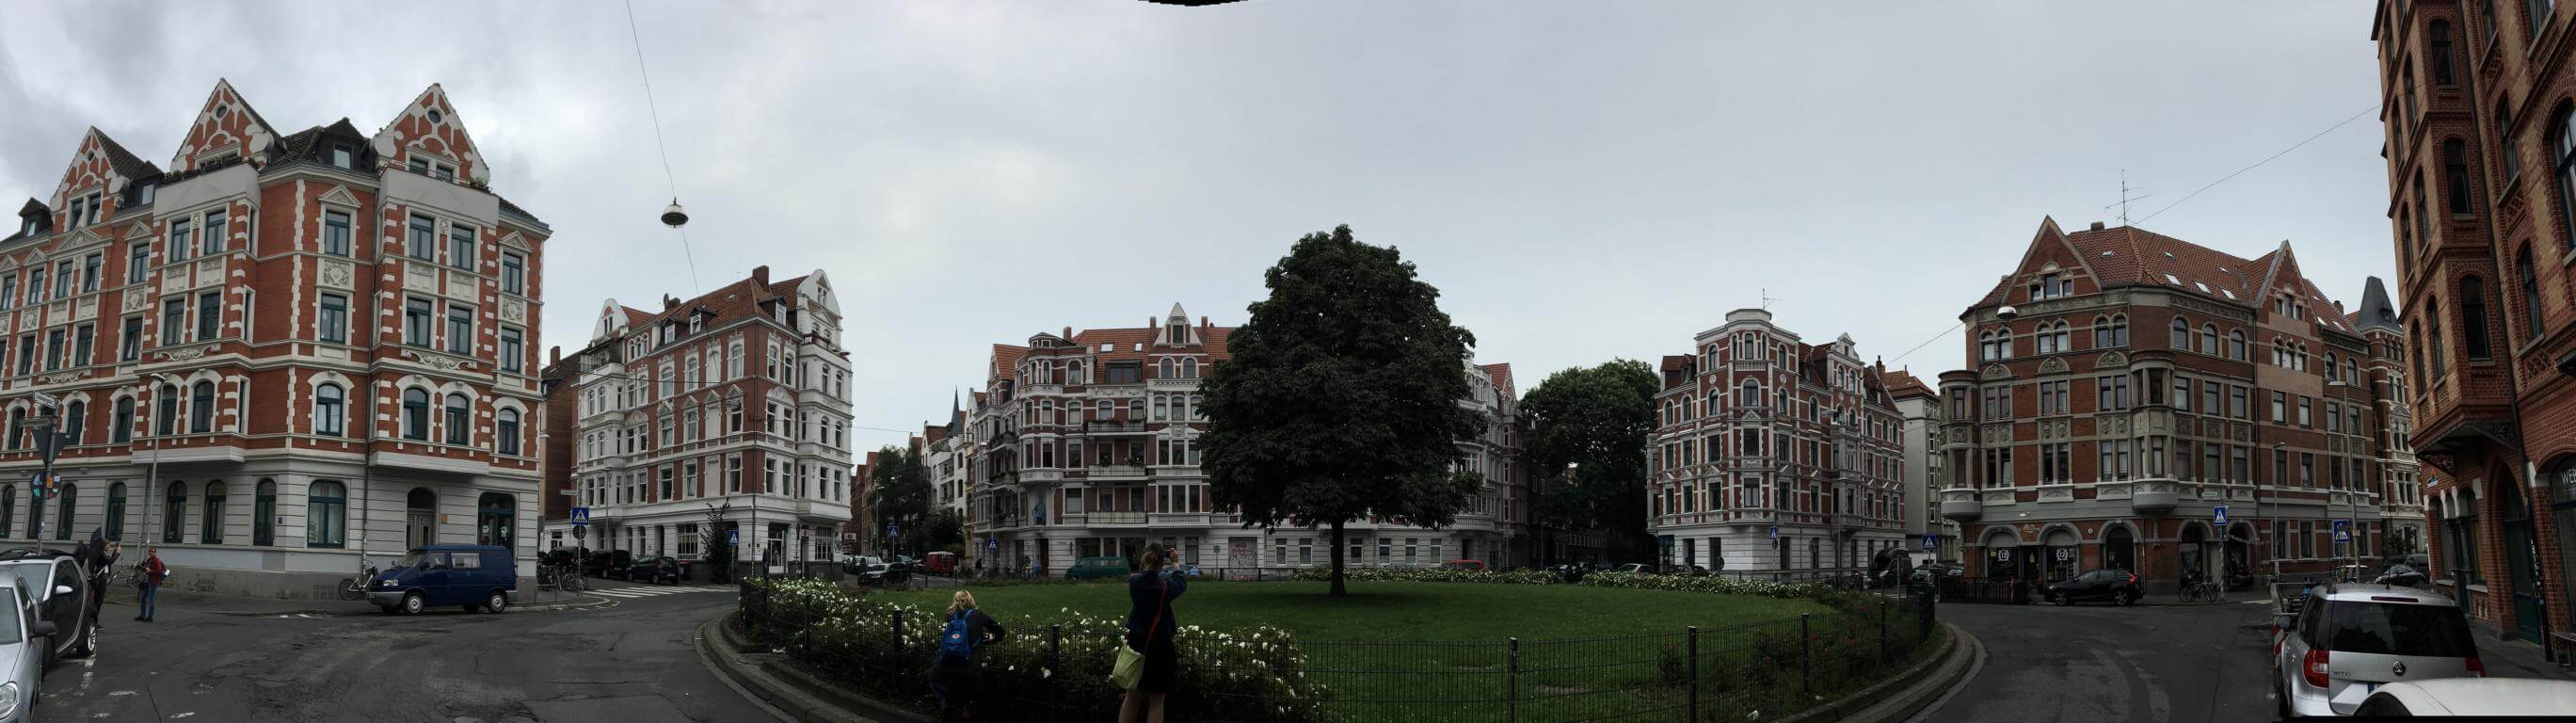 Der Lichtenbergplatz in Hannover mit den tollen alten Häusern